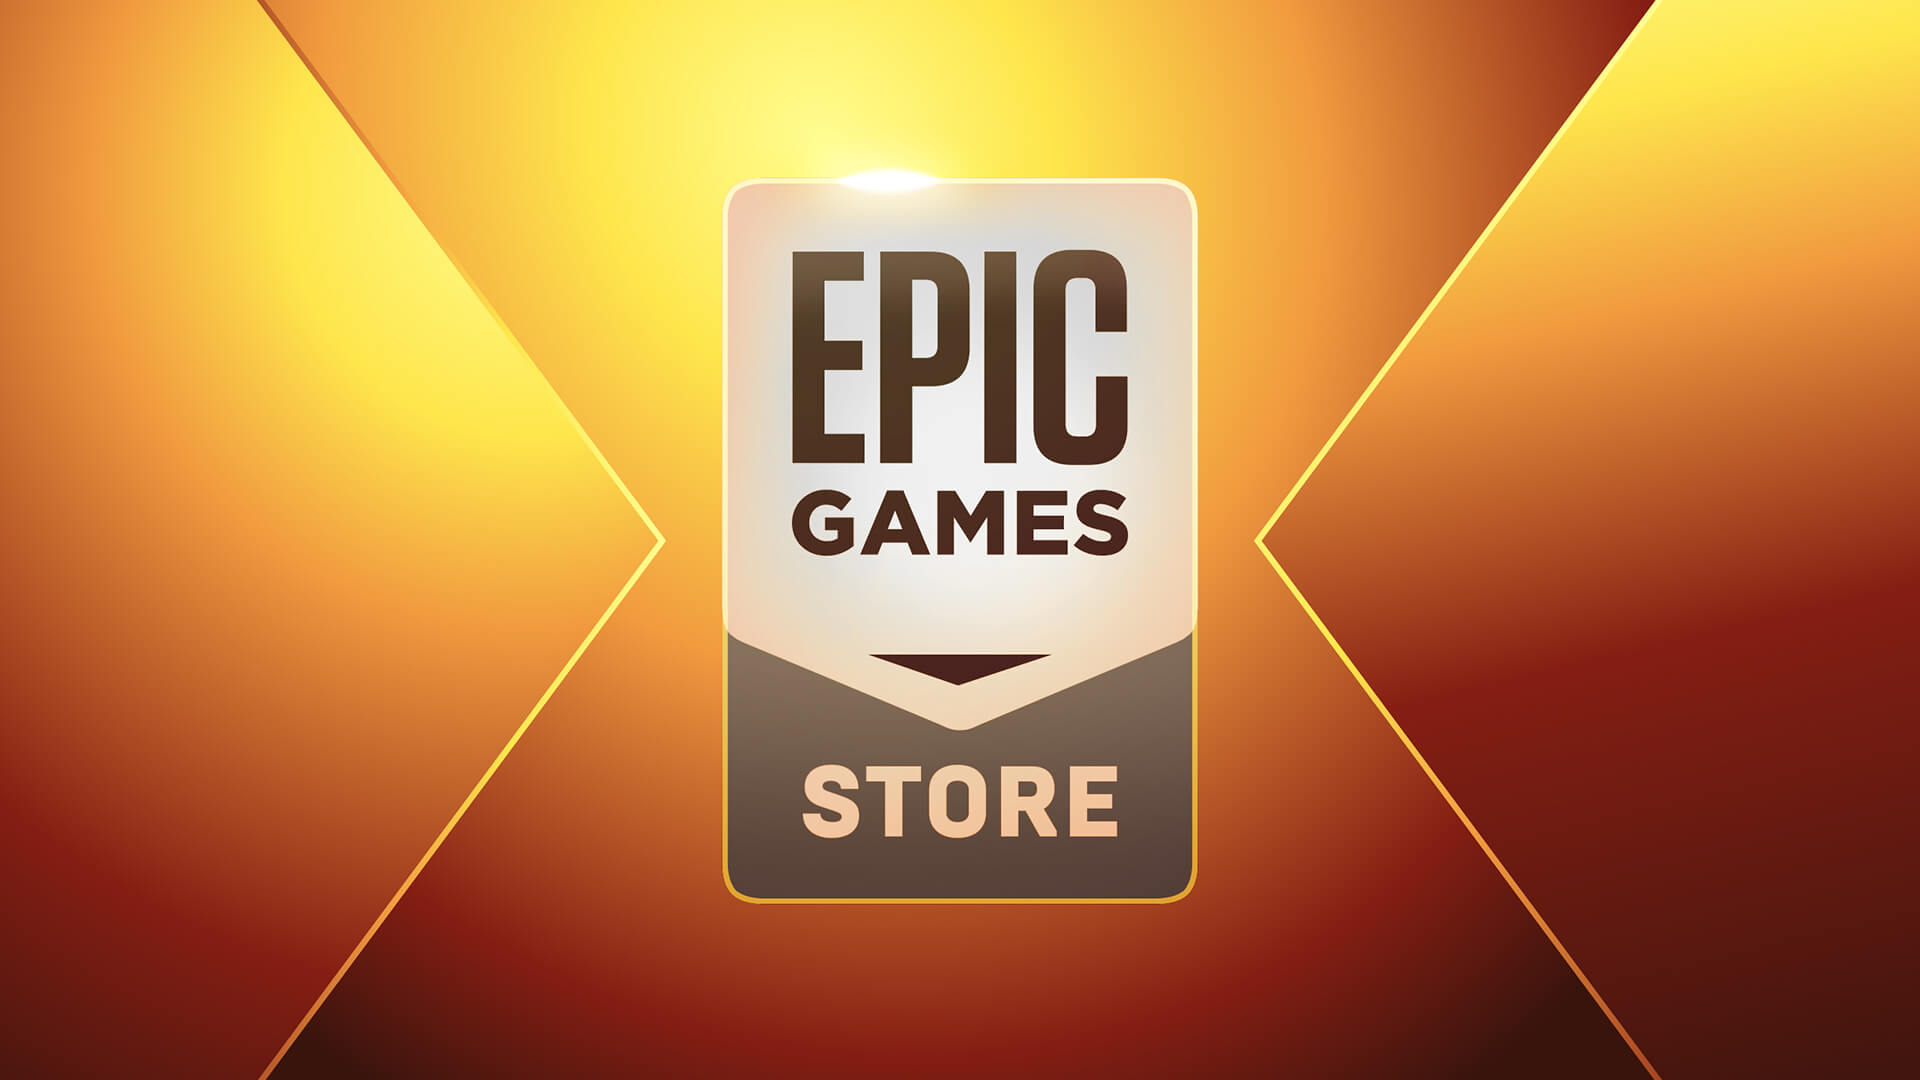 Η Epic εξηγεί πώς ξοδεύει εκατομμύρια δολάρια στα δωρεάν παιχνίδια του Epic Games Store